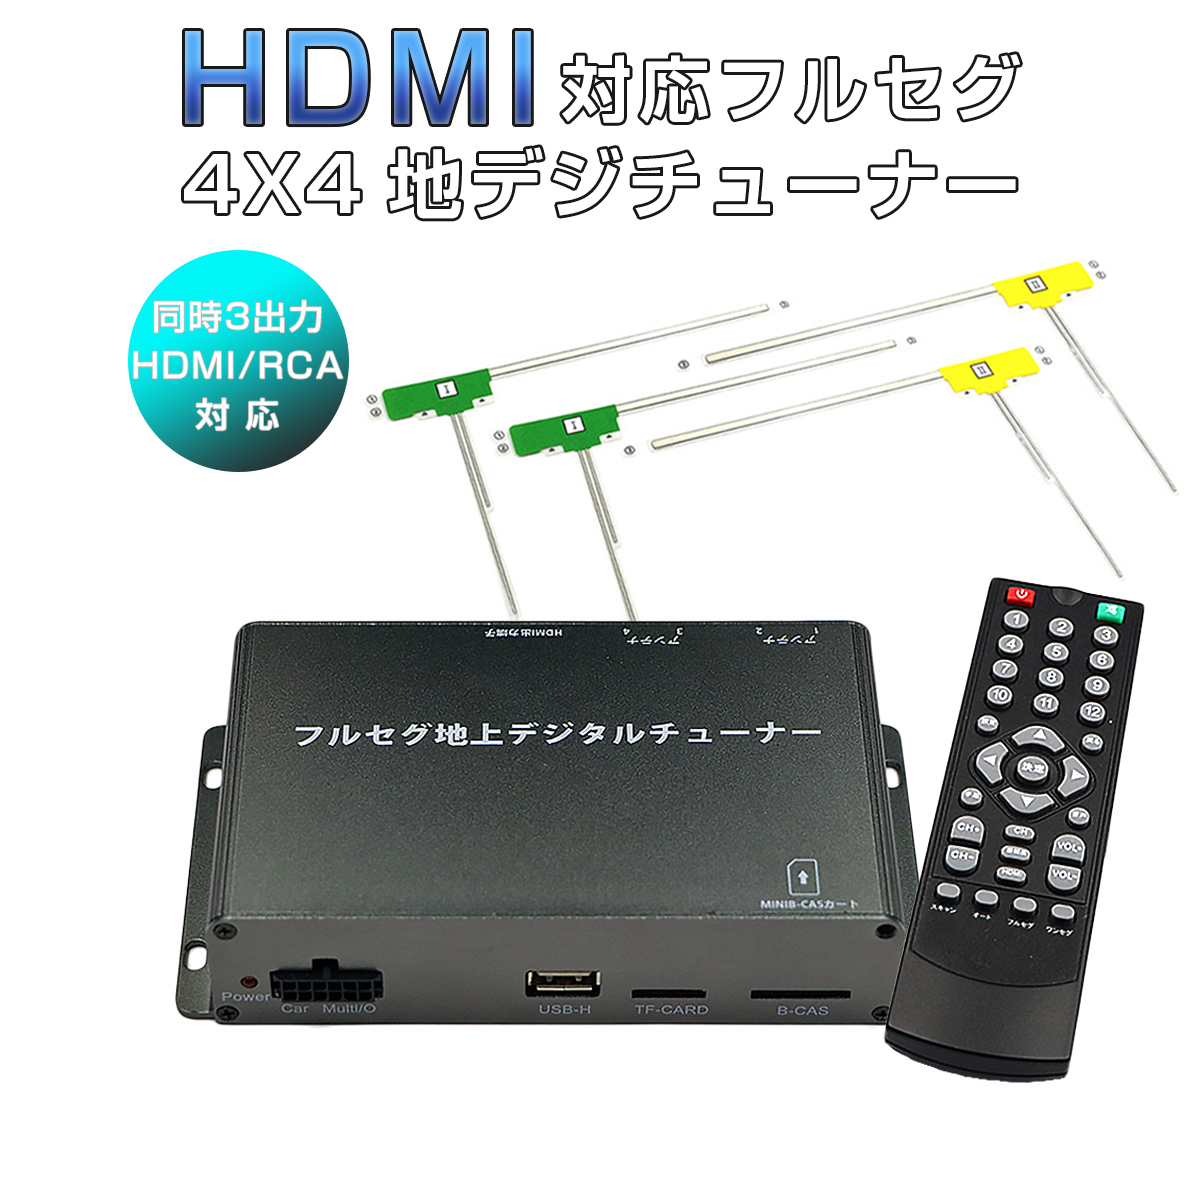 卸売B2B 高精細度 地デジチューナー フルセグチューナー HDMI 4x4 4チューナー 4アンテナ 高性能 TV 車載 AV マルチ出力 12V/24V対応 miniB-CASカード付き 宅配便送料無料 6ヶ月保証 K&M